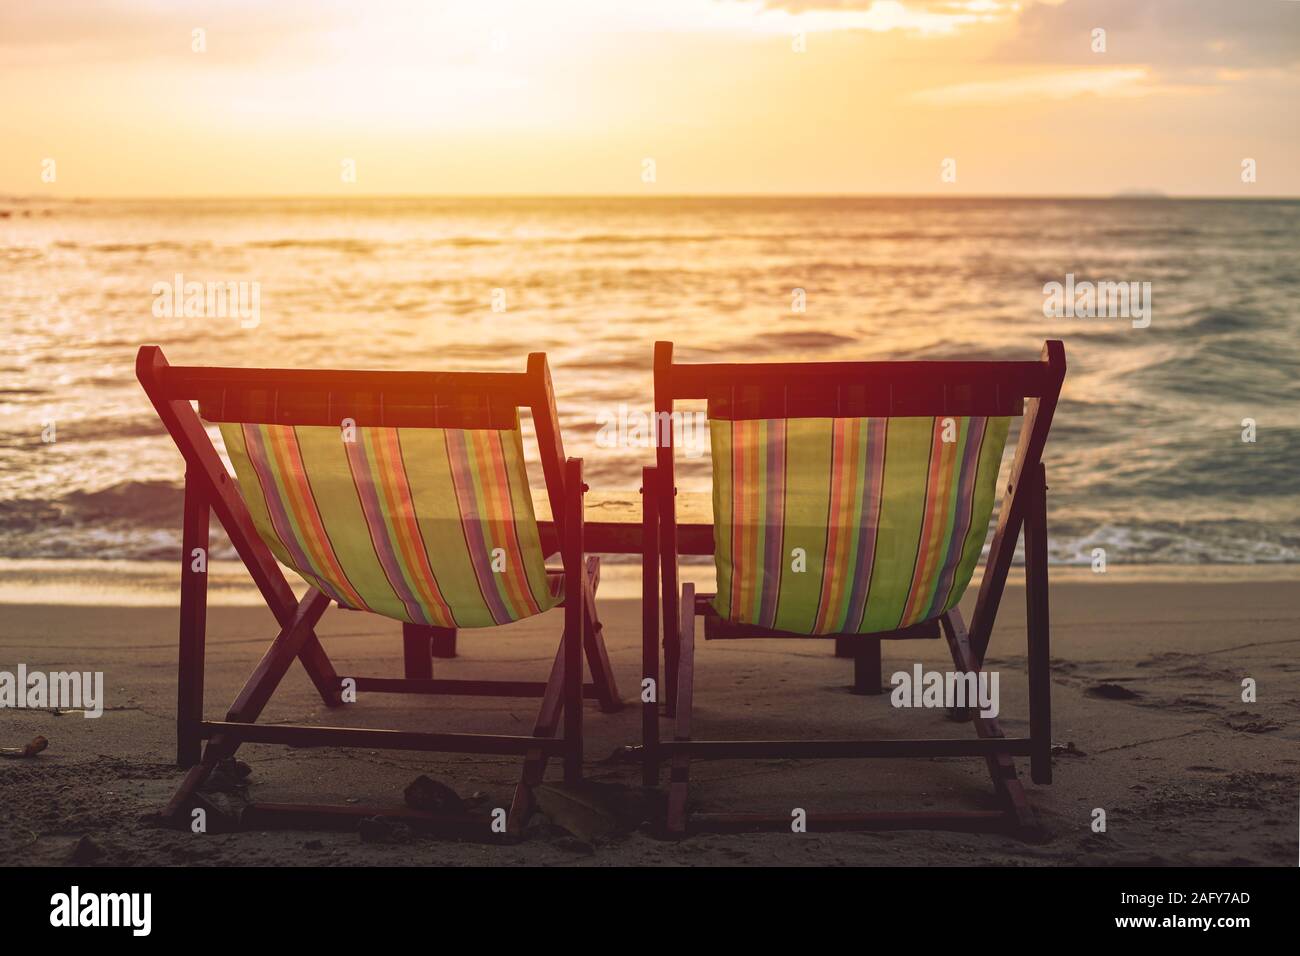 Zwei leere Strand bett Stuhl am Strand mit Sonne Dämmerung Himmel Hintergrund gesetzt. Stockfoto